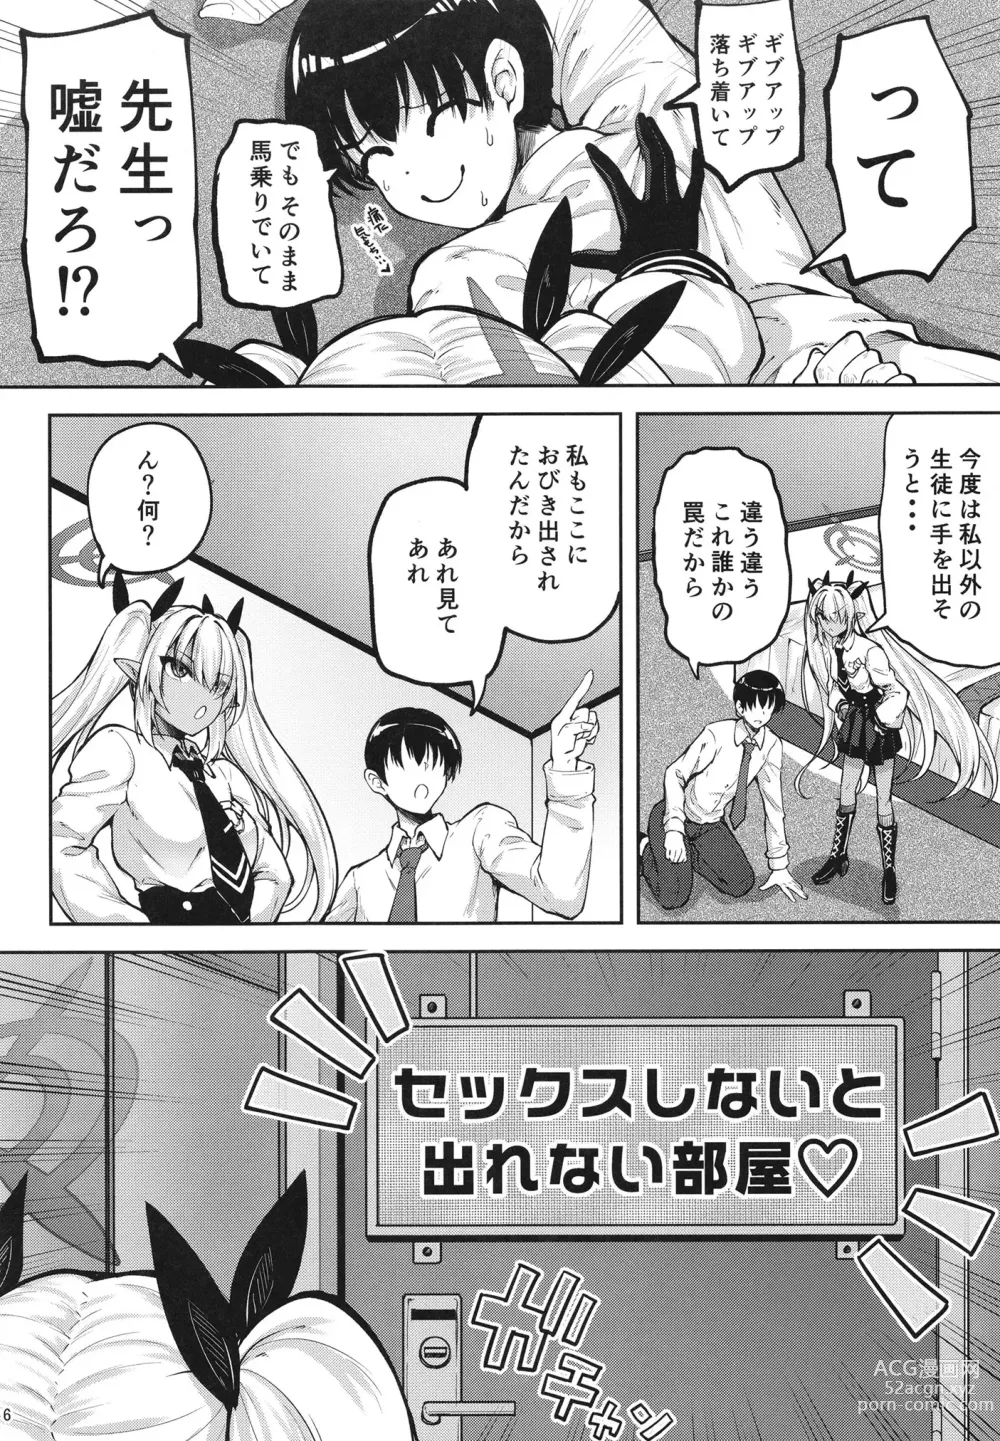 Page 6 of doujinshi [Mugen@WORKS (Akiduki Akina) Iori to ×× Shinai to Derenai Heya (Blue Archive) [Digital]